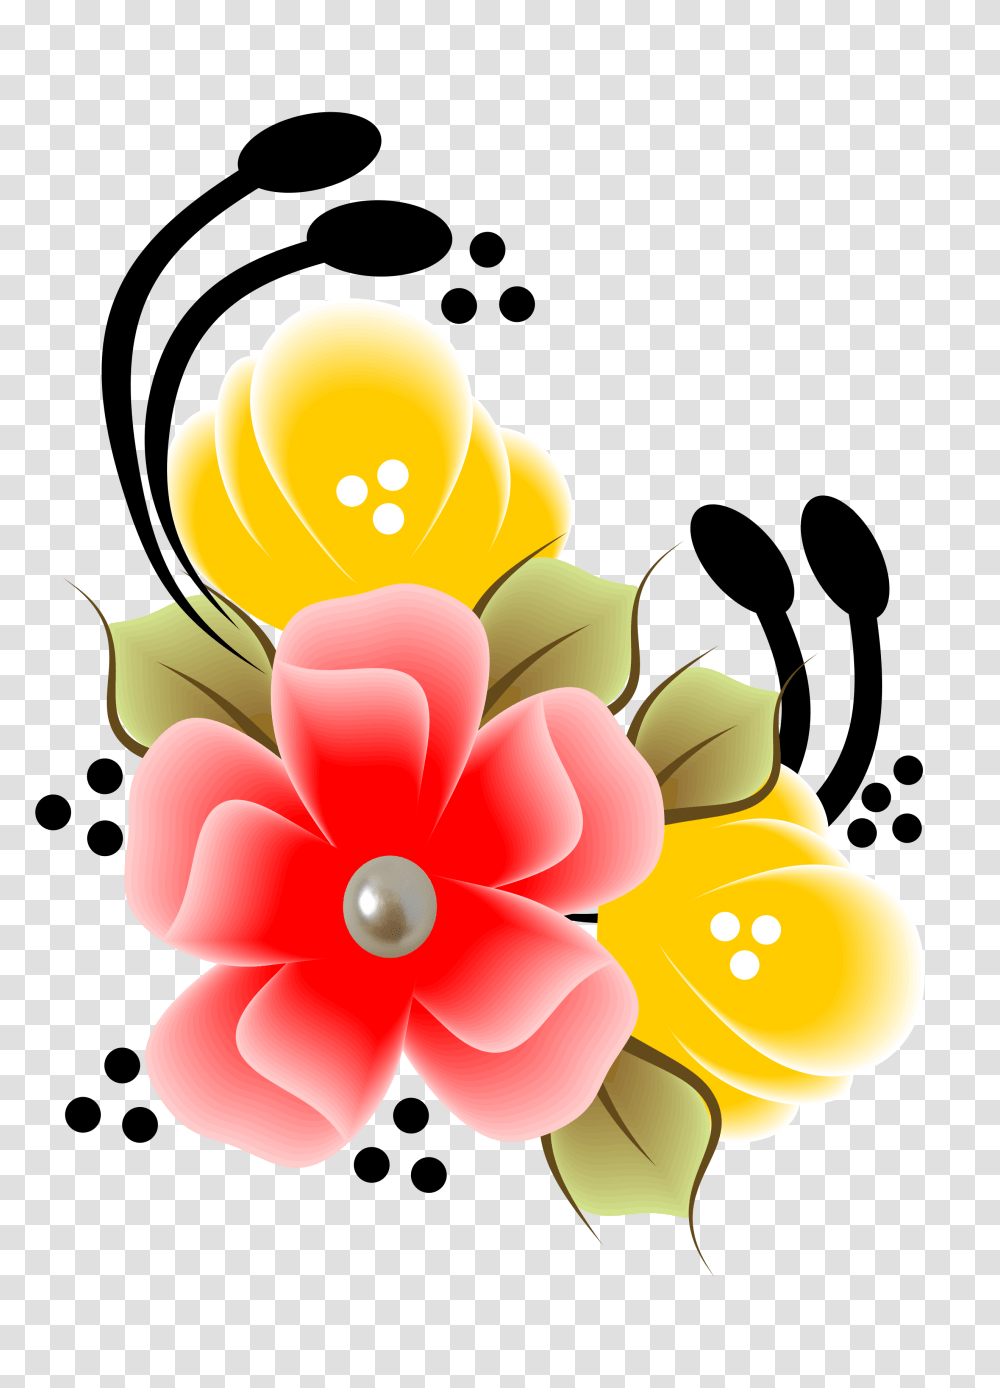 Flower Plus In Flower, Floral Design, Pattern Transparent Png